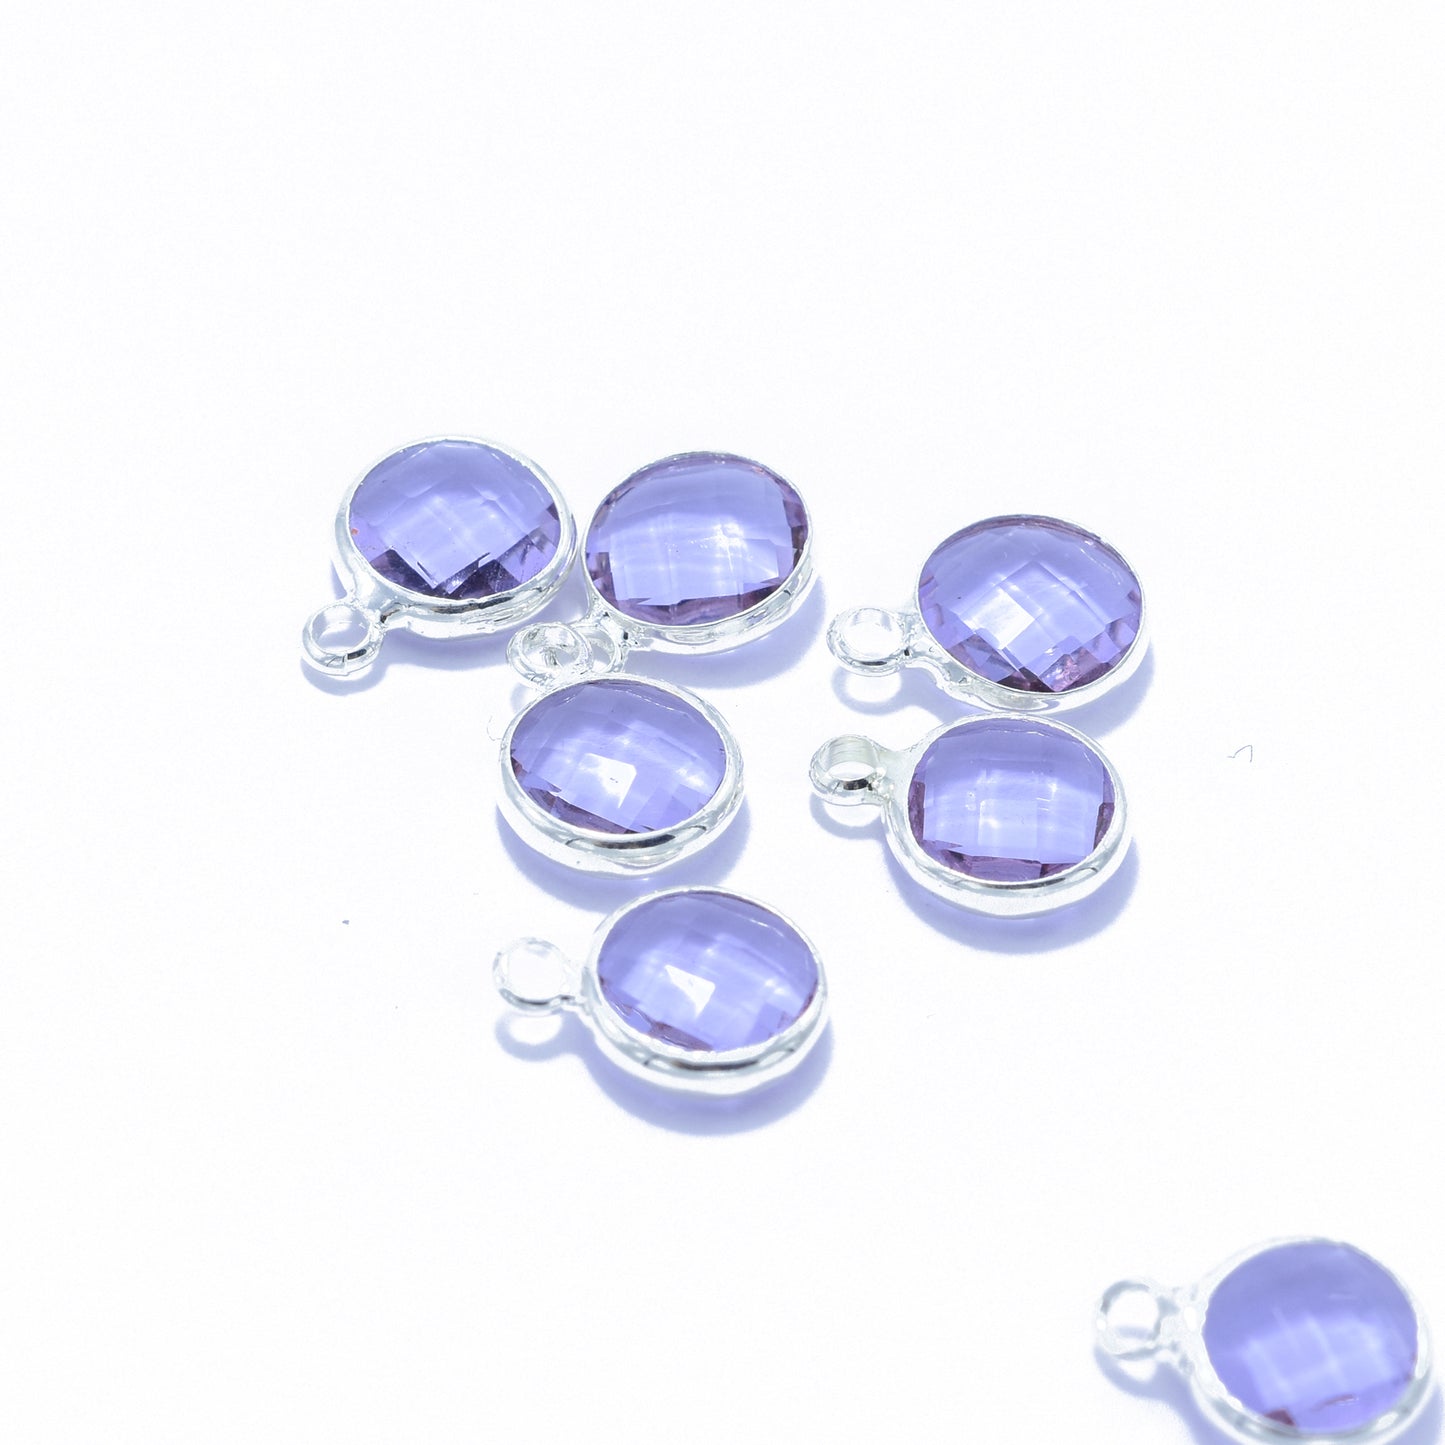 Crystal pendant violet / silver colored / Ø 8 mm